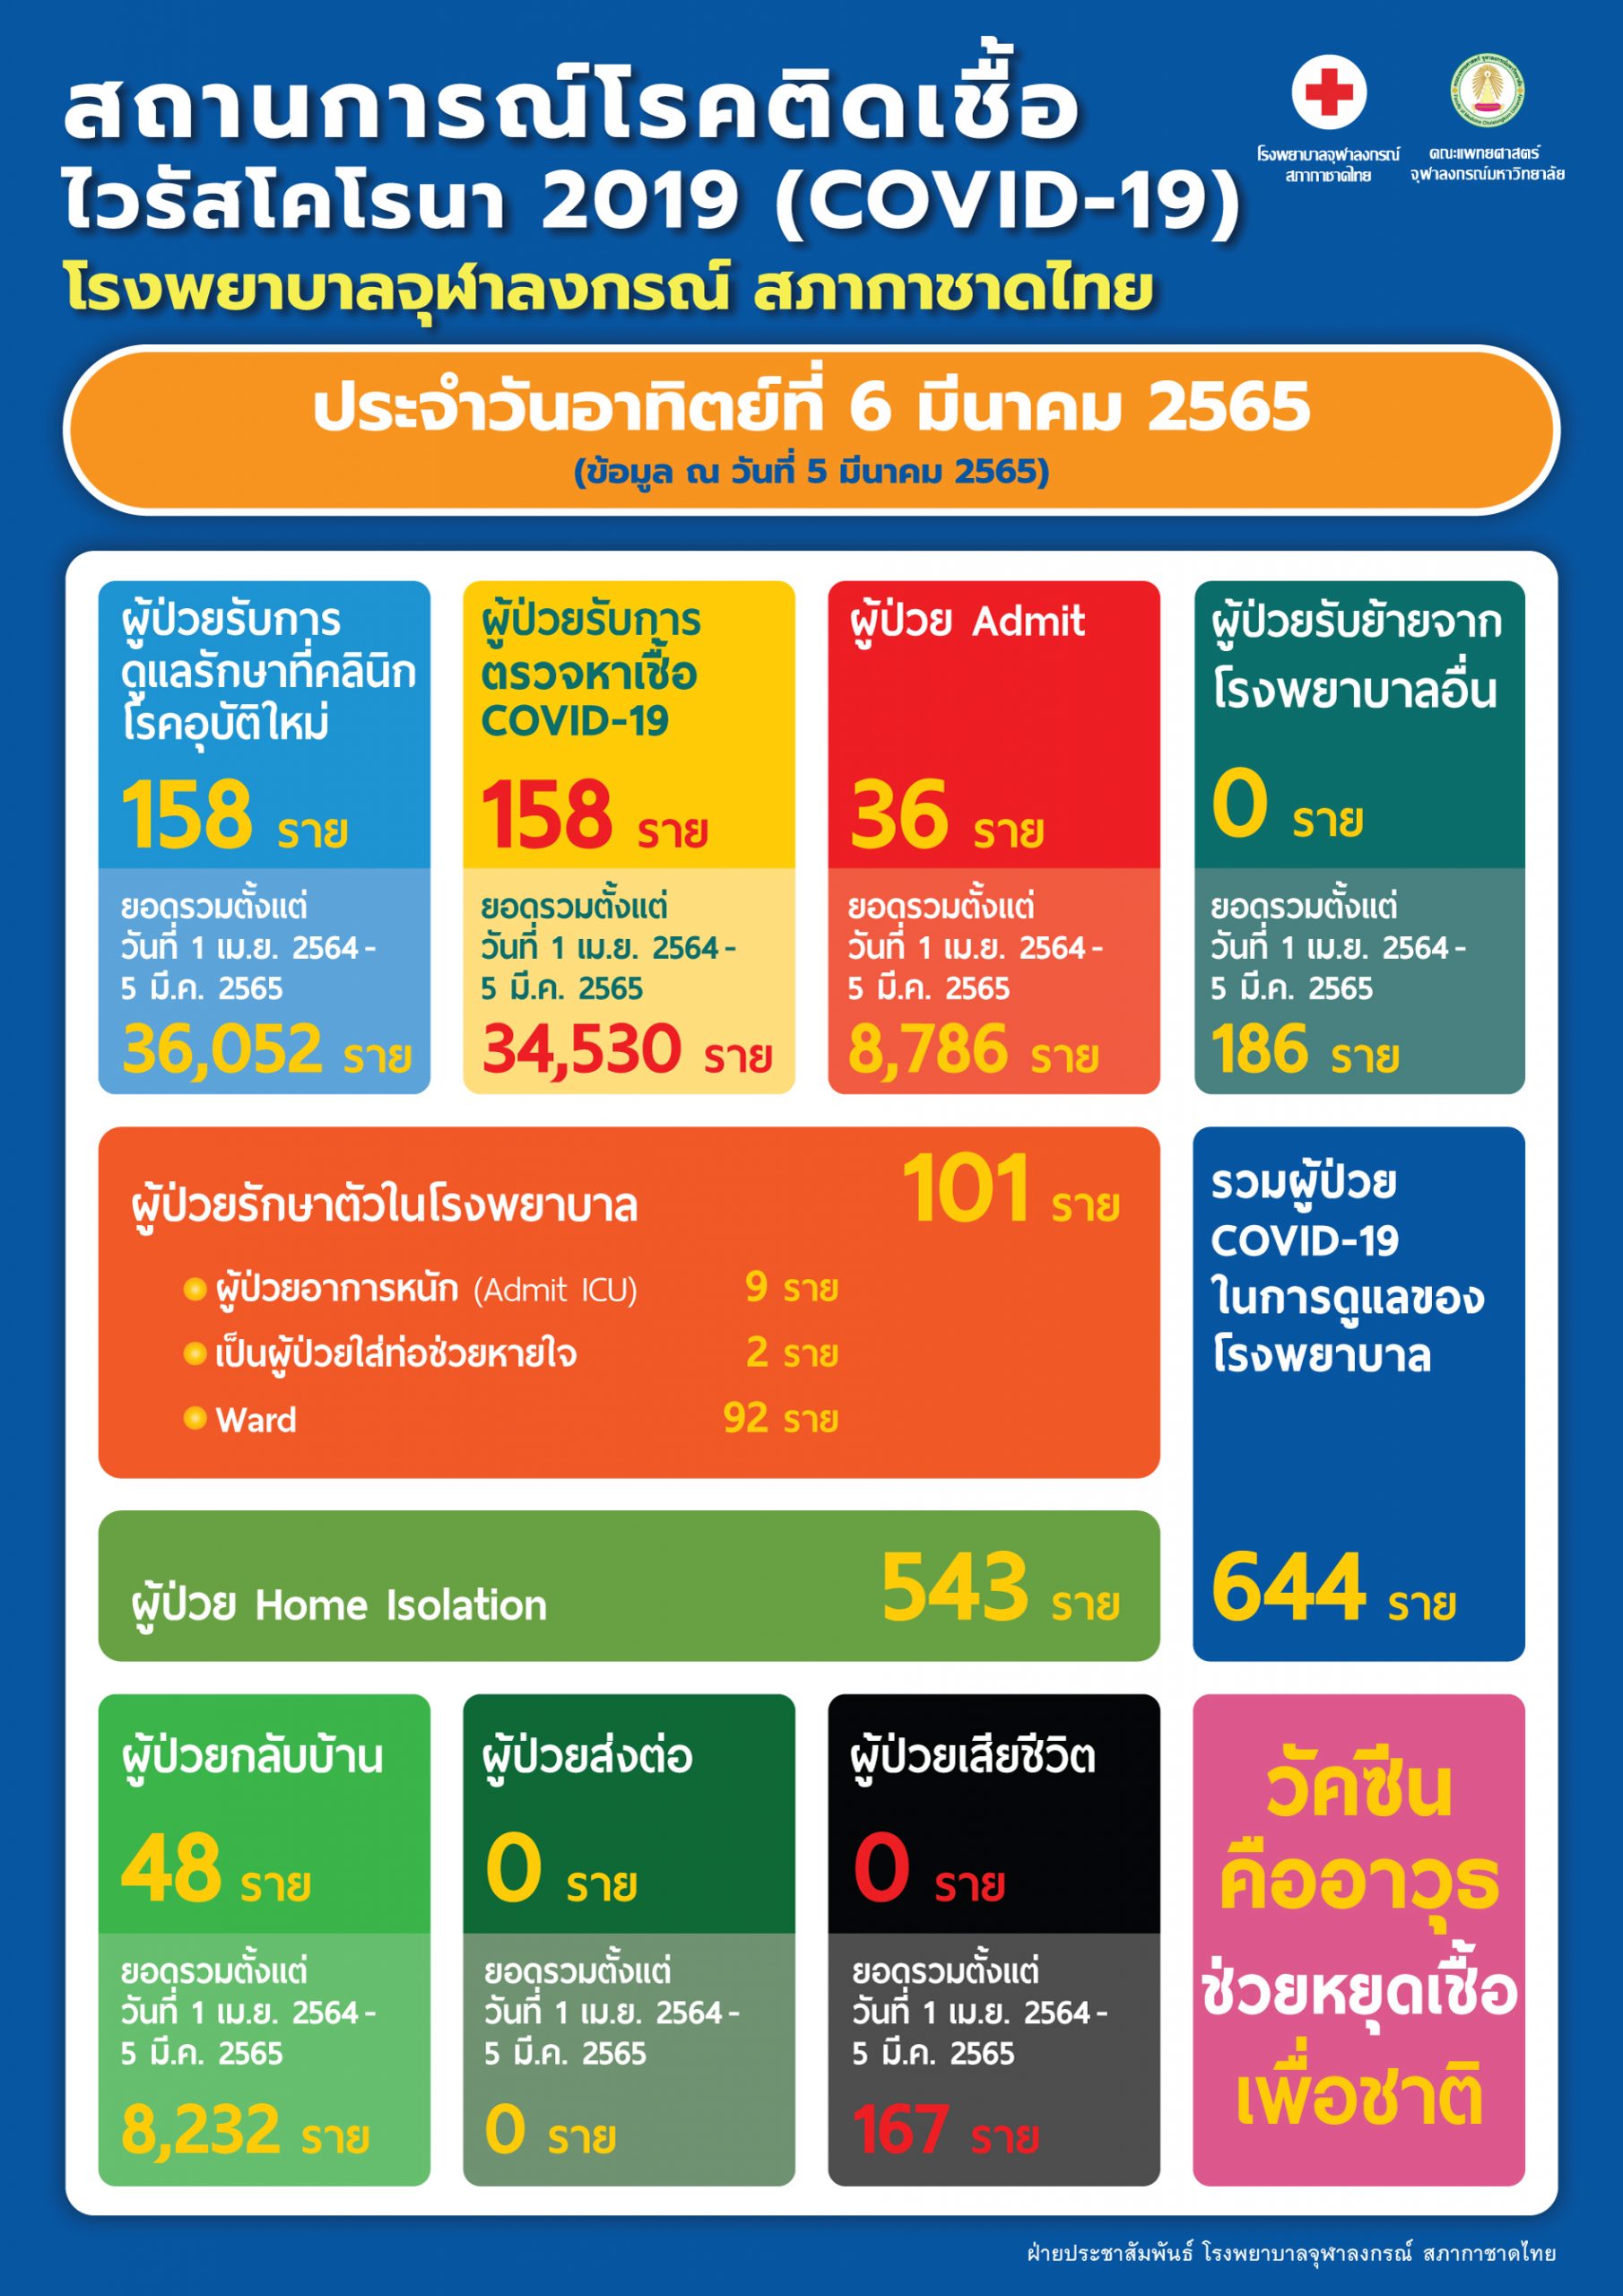 สถานการณ์โรคติดเชื้อไวรัสโคโรนา 2019 (COVID-19) โรงพยาบาลจุฬาลงกรณ์ สภากาชาดไทย ประจำวันอาทิตย์ที่ 6 มีนาคม 2565